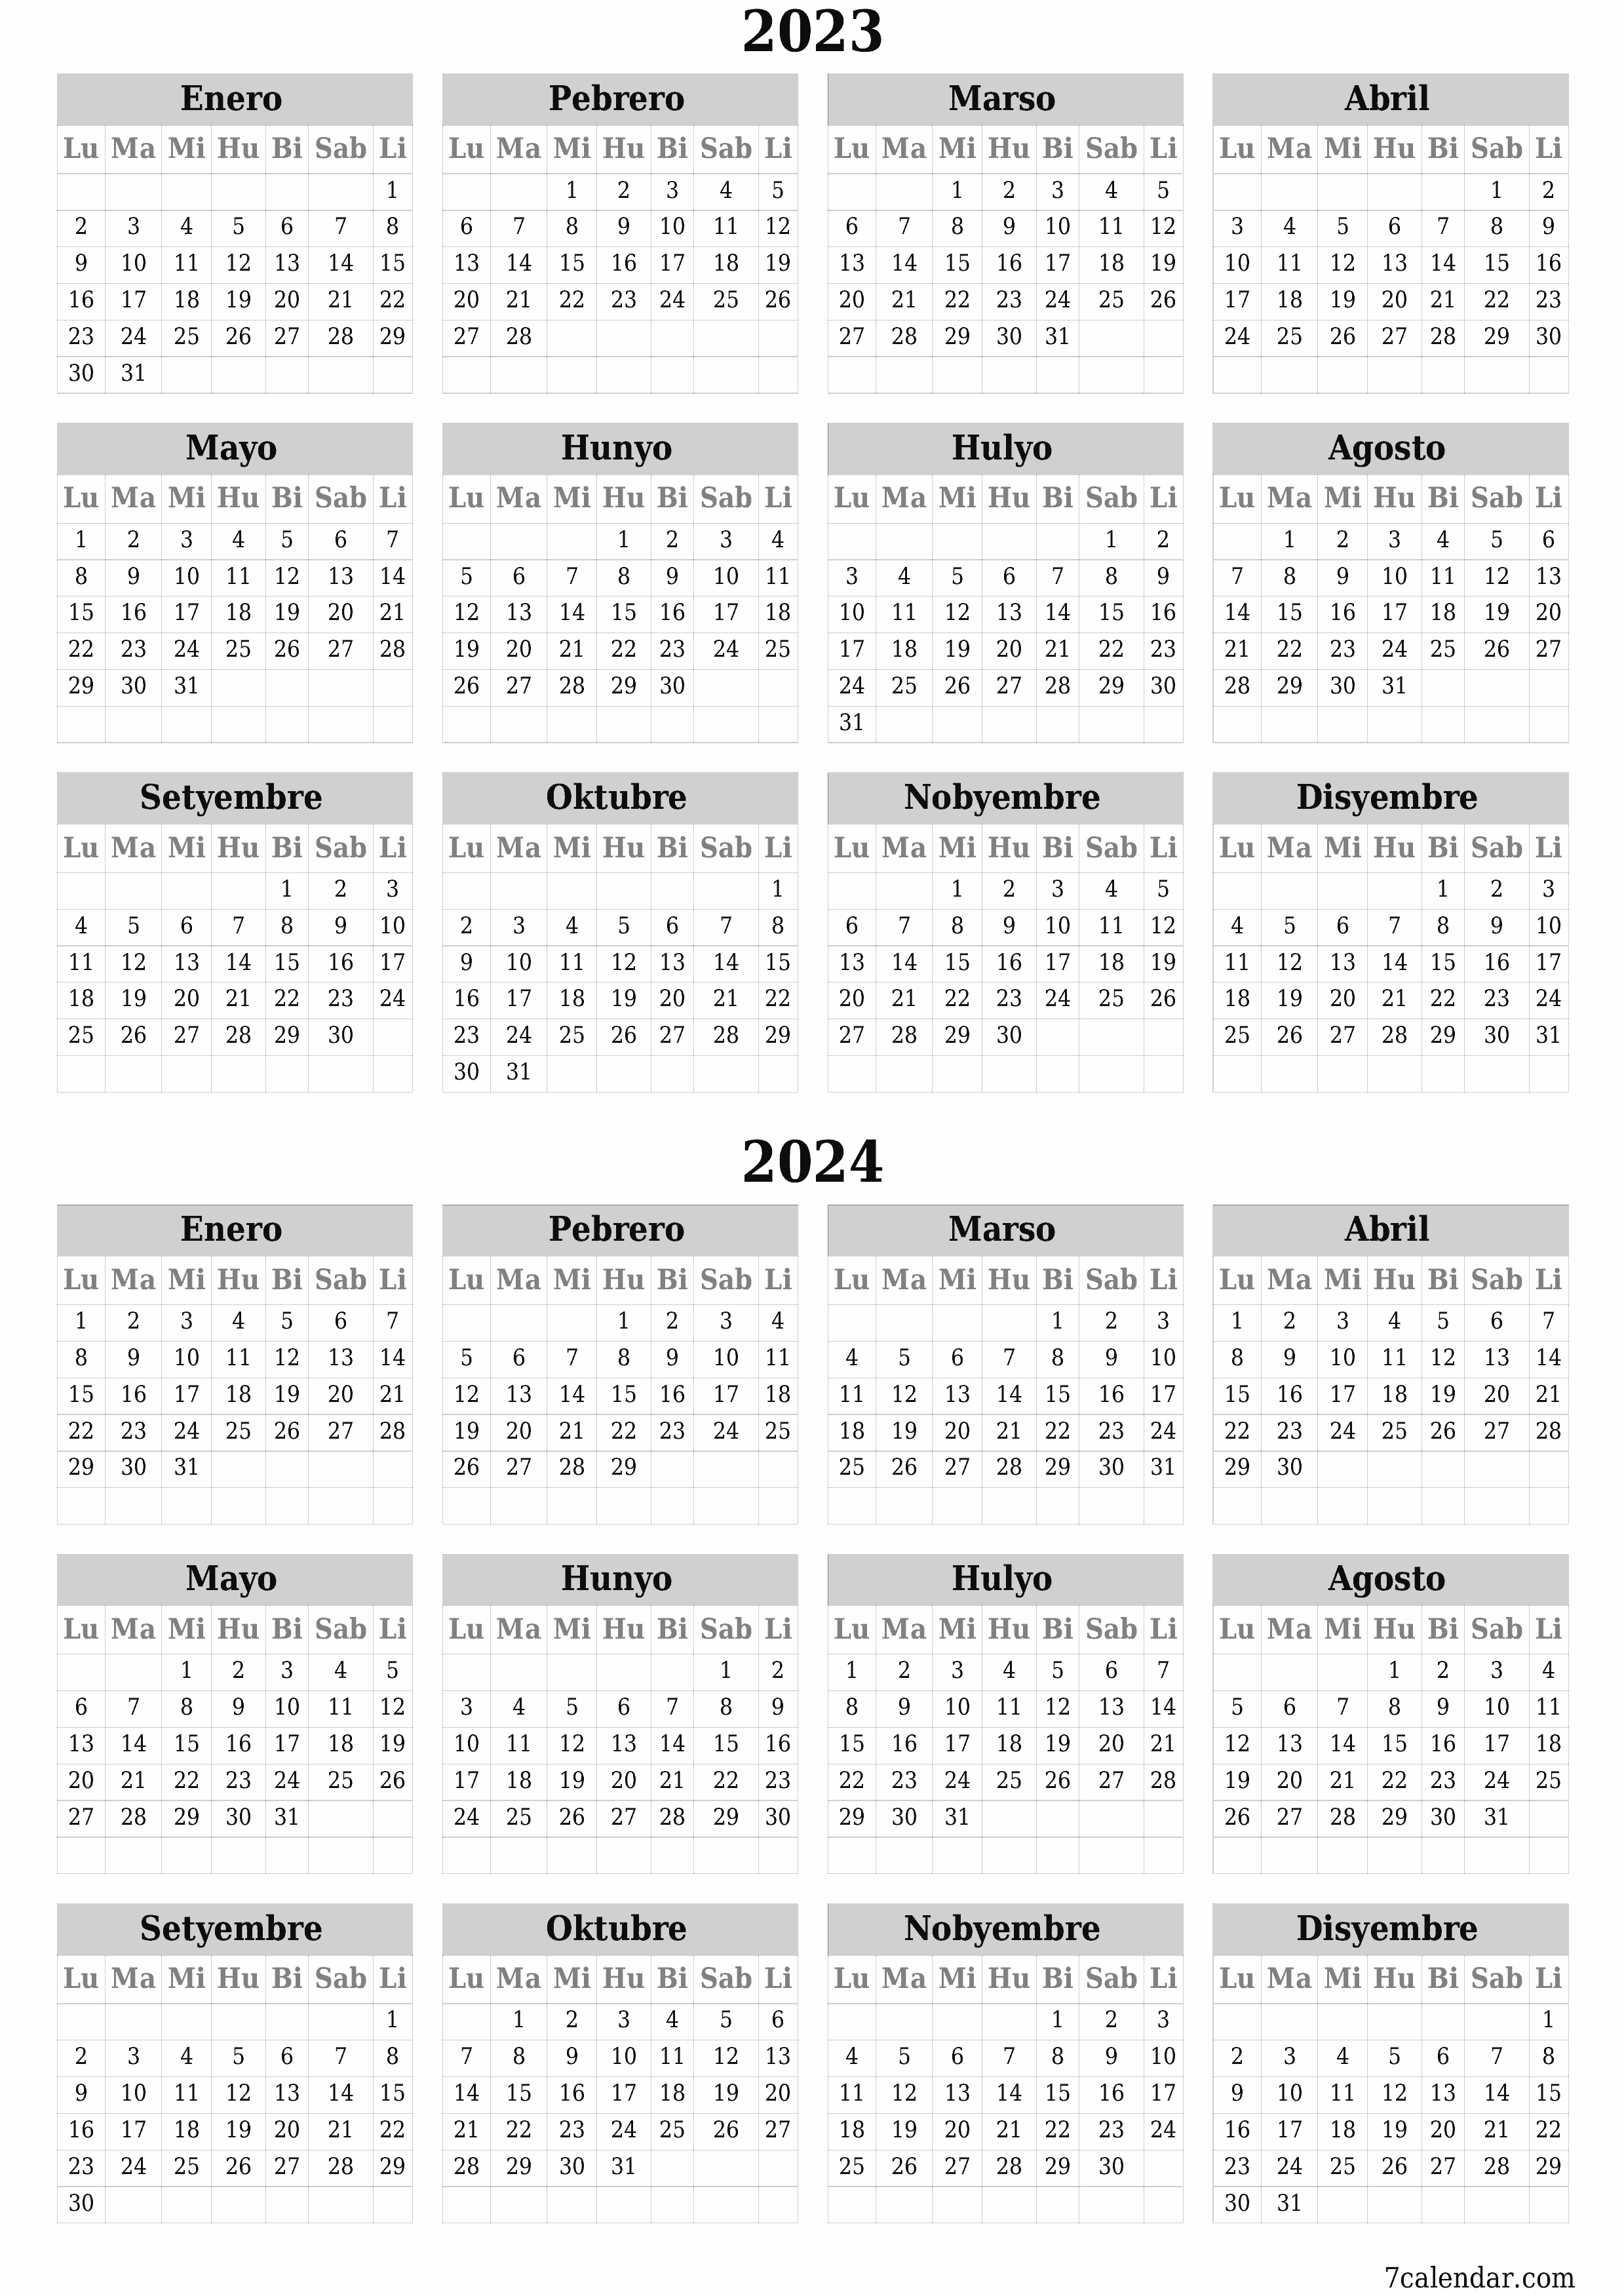 napi-print na sa dingding template ng libreng patayo Taunan kalendaryo Oktubre (Okt) 2023